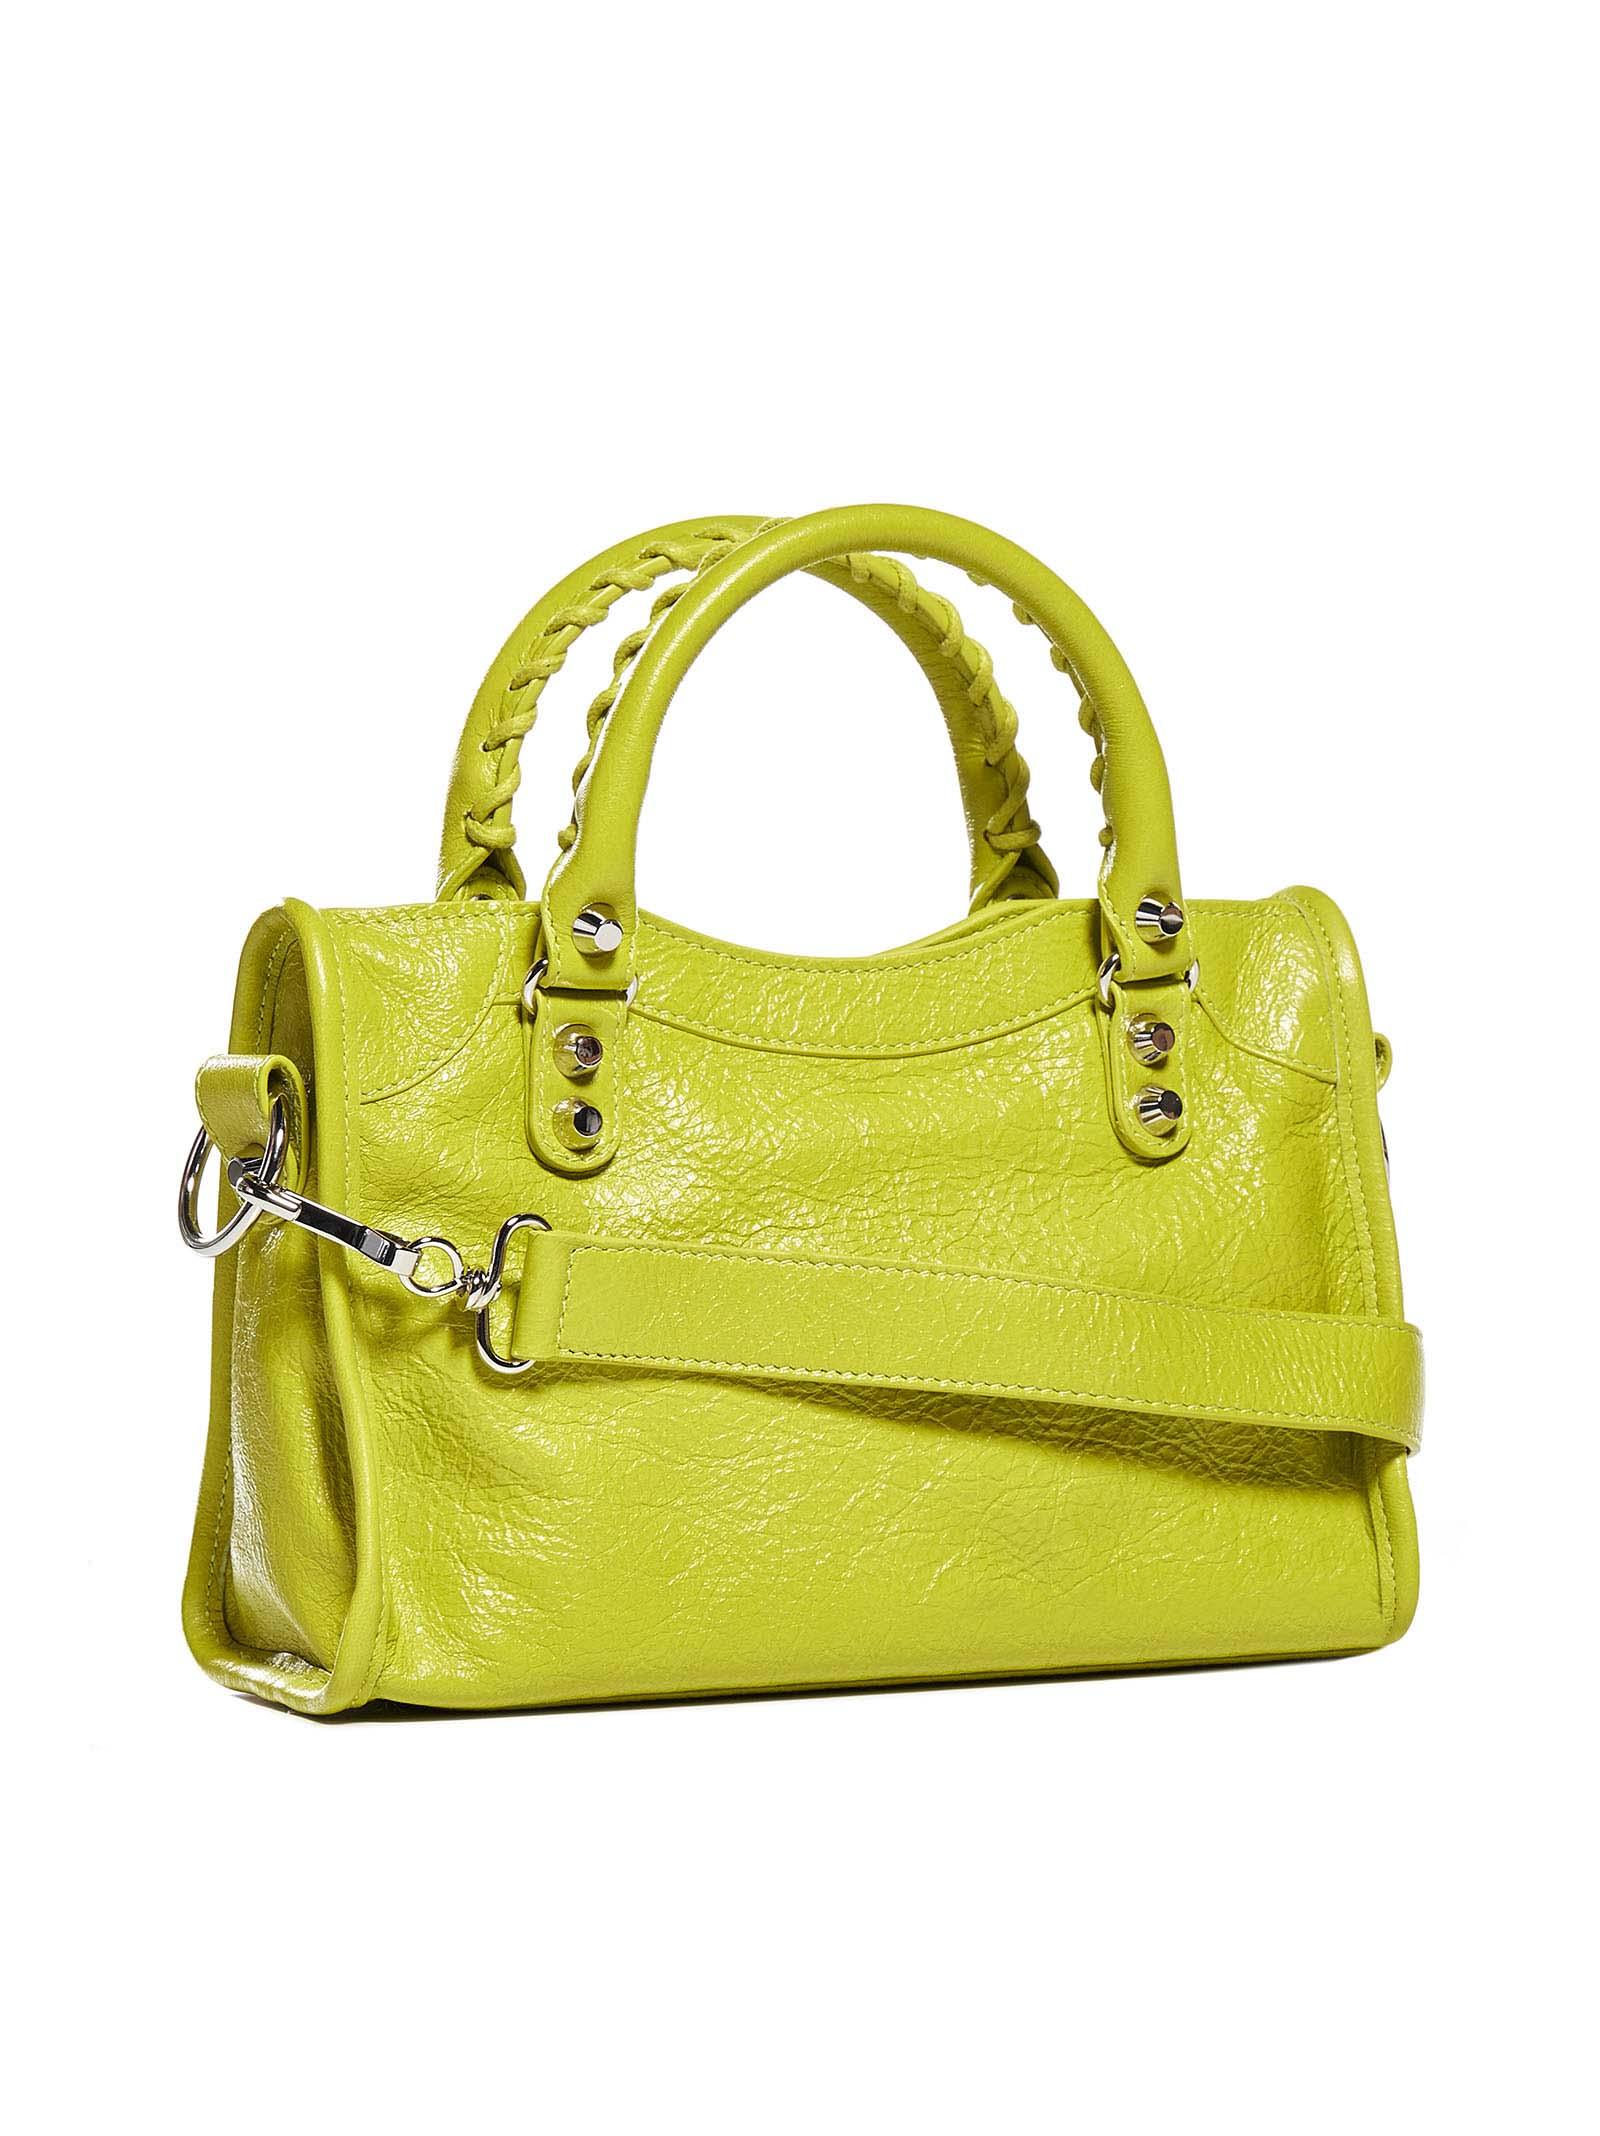 Balenciaga Mini Leather Bag in Yellow |